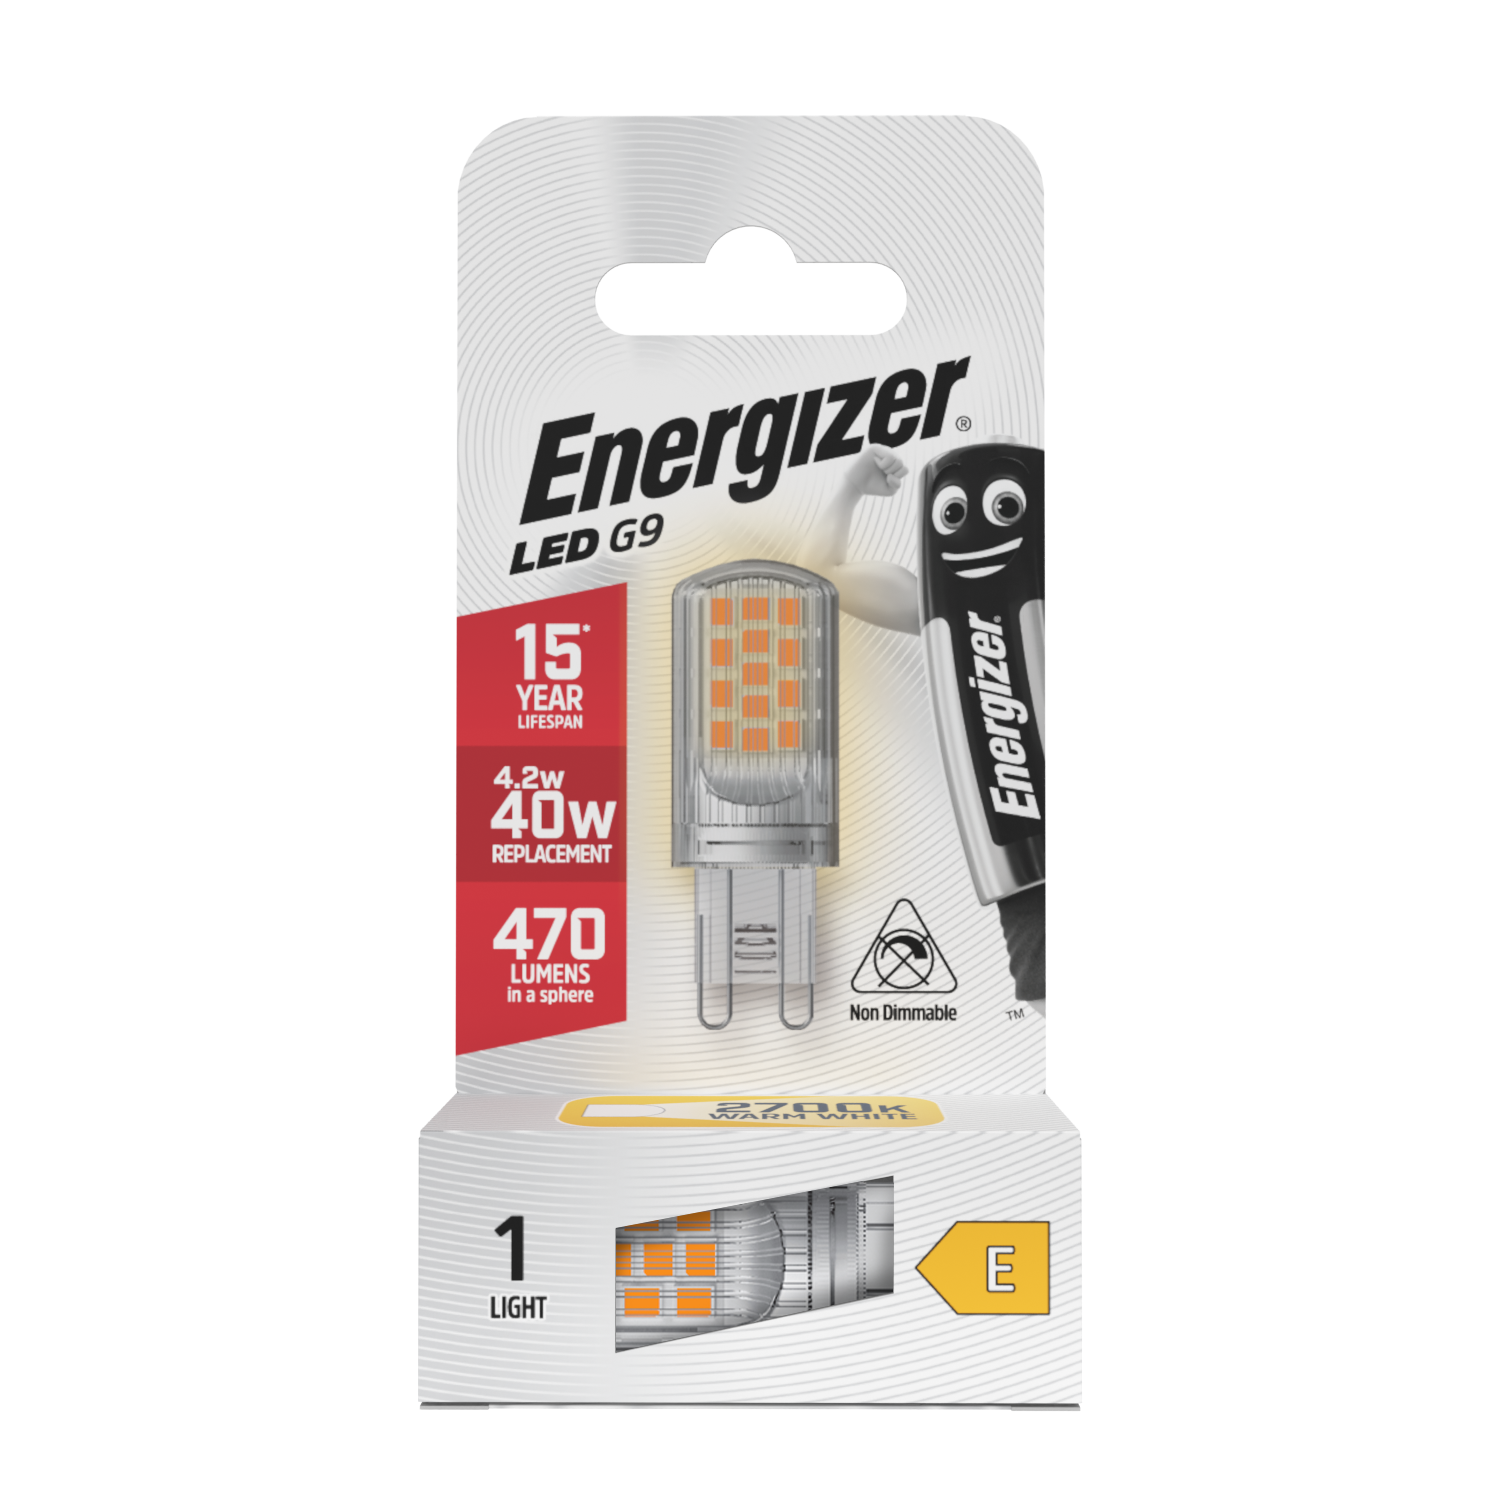 Energizer LED G9 470 Lumens 4.2W 2,700K (Warm White), Box of 1